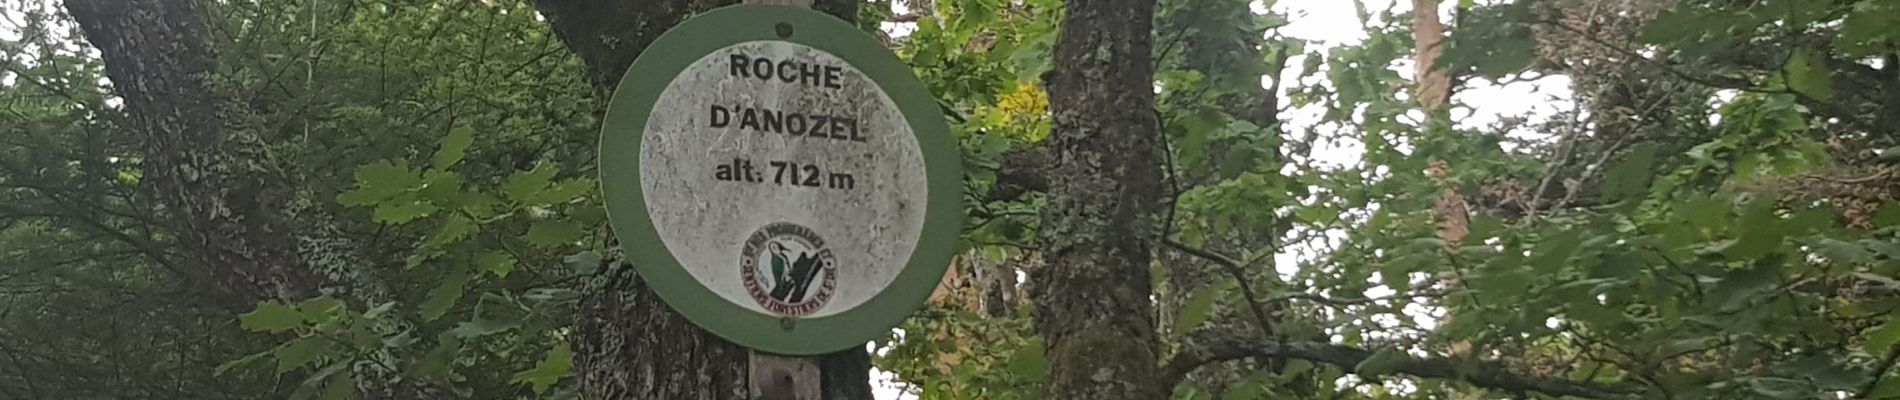 Excursión Ruta Taintrux - 2020 08 16  Roche d'Anozel  - Photo